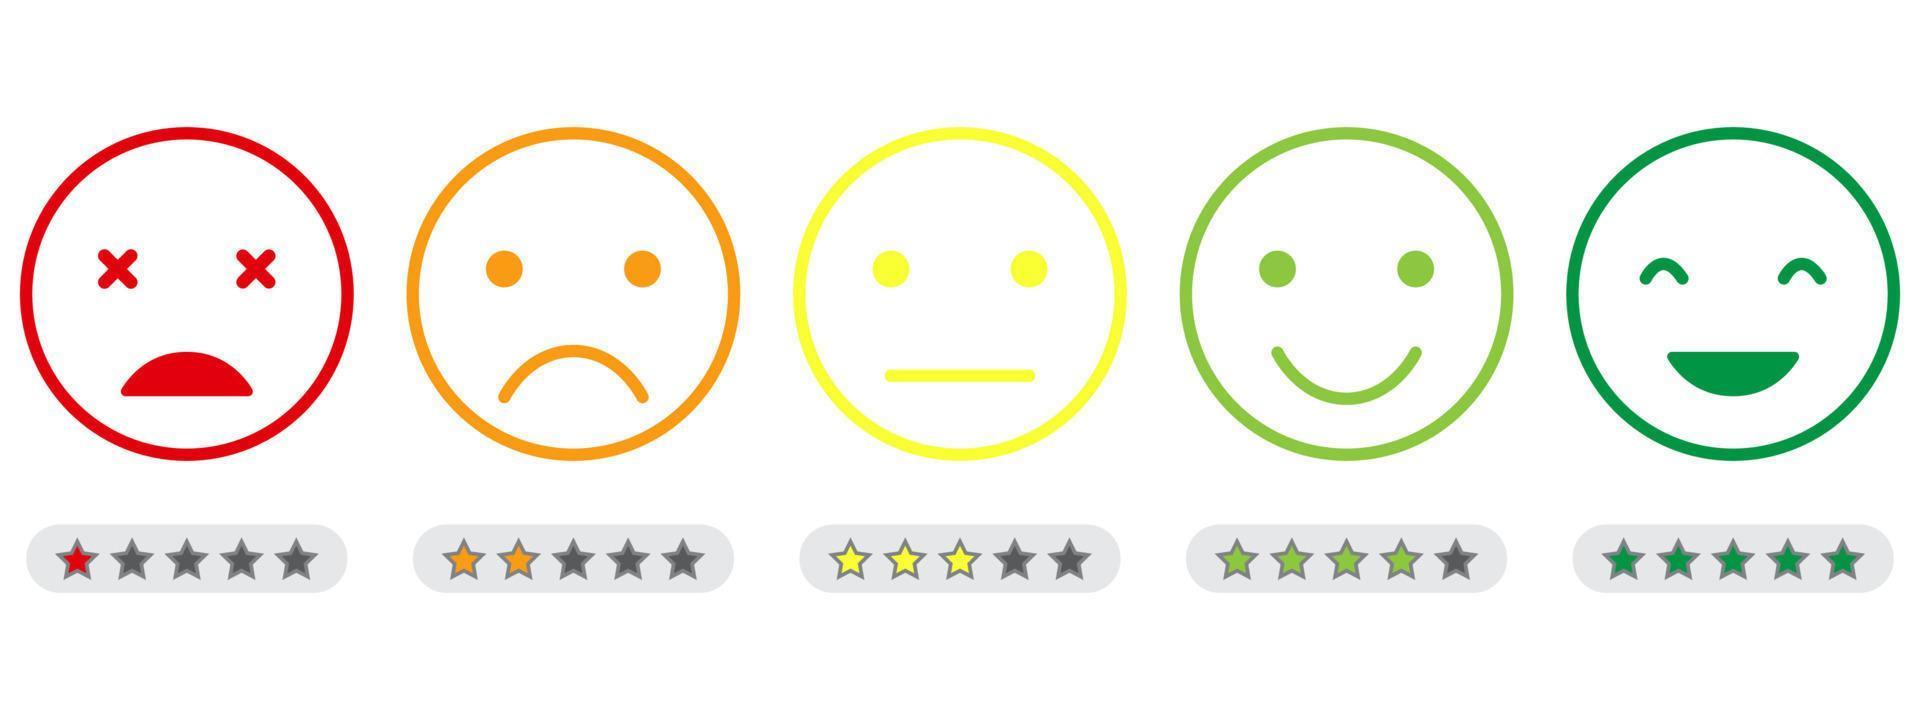 Emoji-Feedback-Skala mit Sternliniensymbol. kundenstimmung vom fröhlichen guten gesicht bis zum wütenden und traurigen konzept. Emoticon-Feedback. Ebene Umfrage zur Kundenzufriedenheit. isolierte Vektorillustration vektor